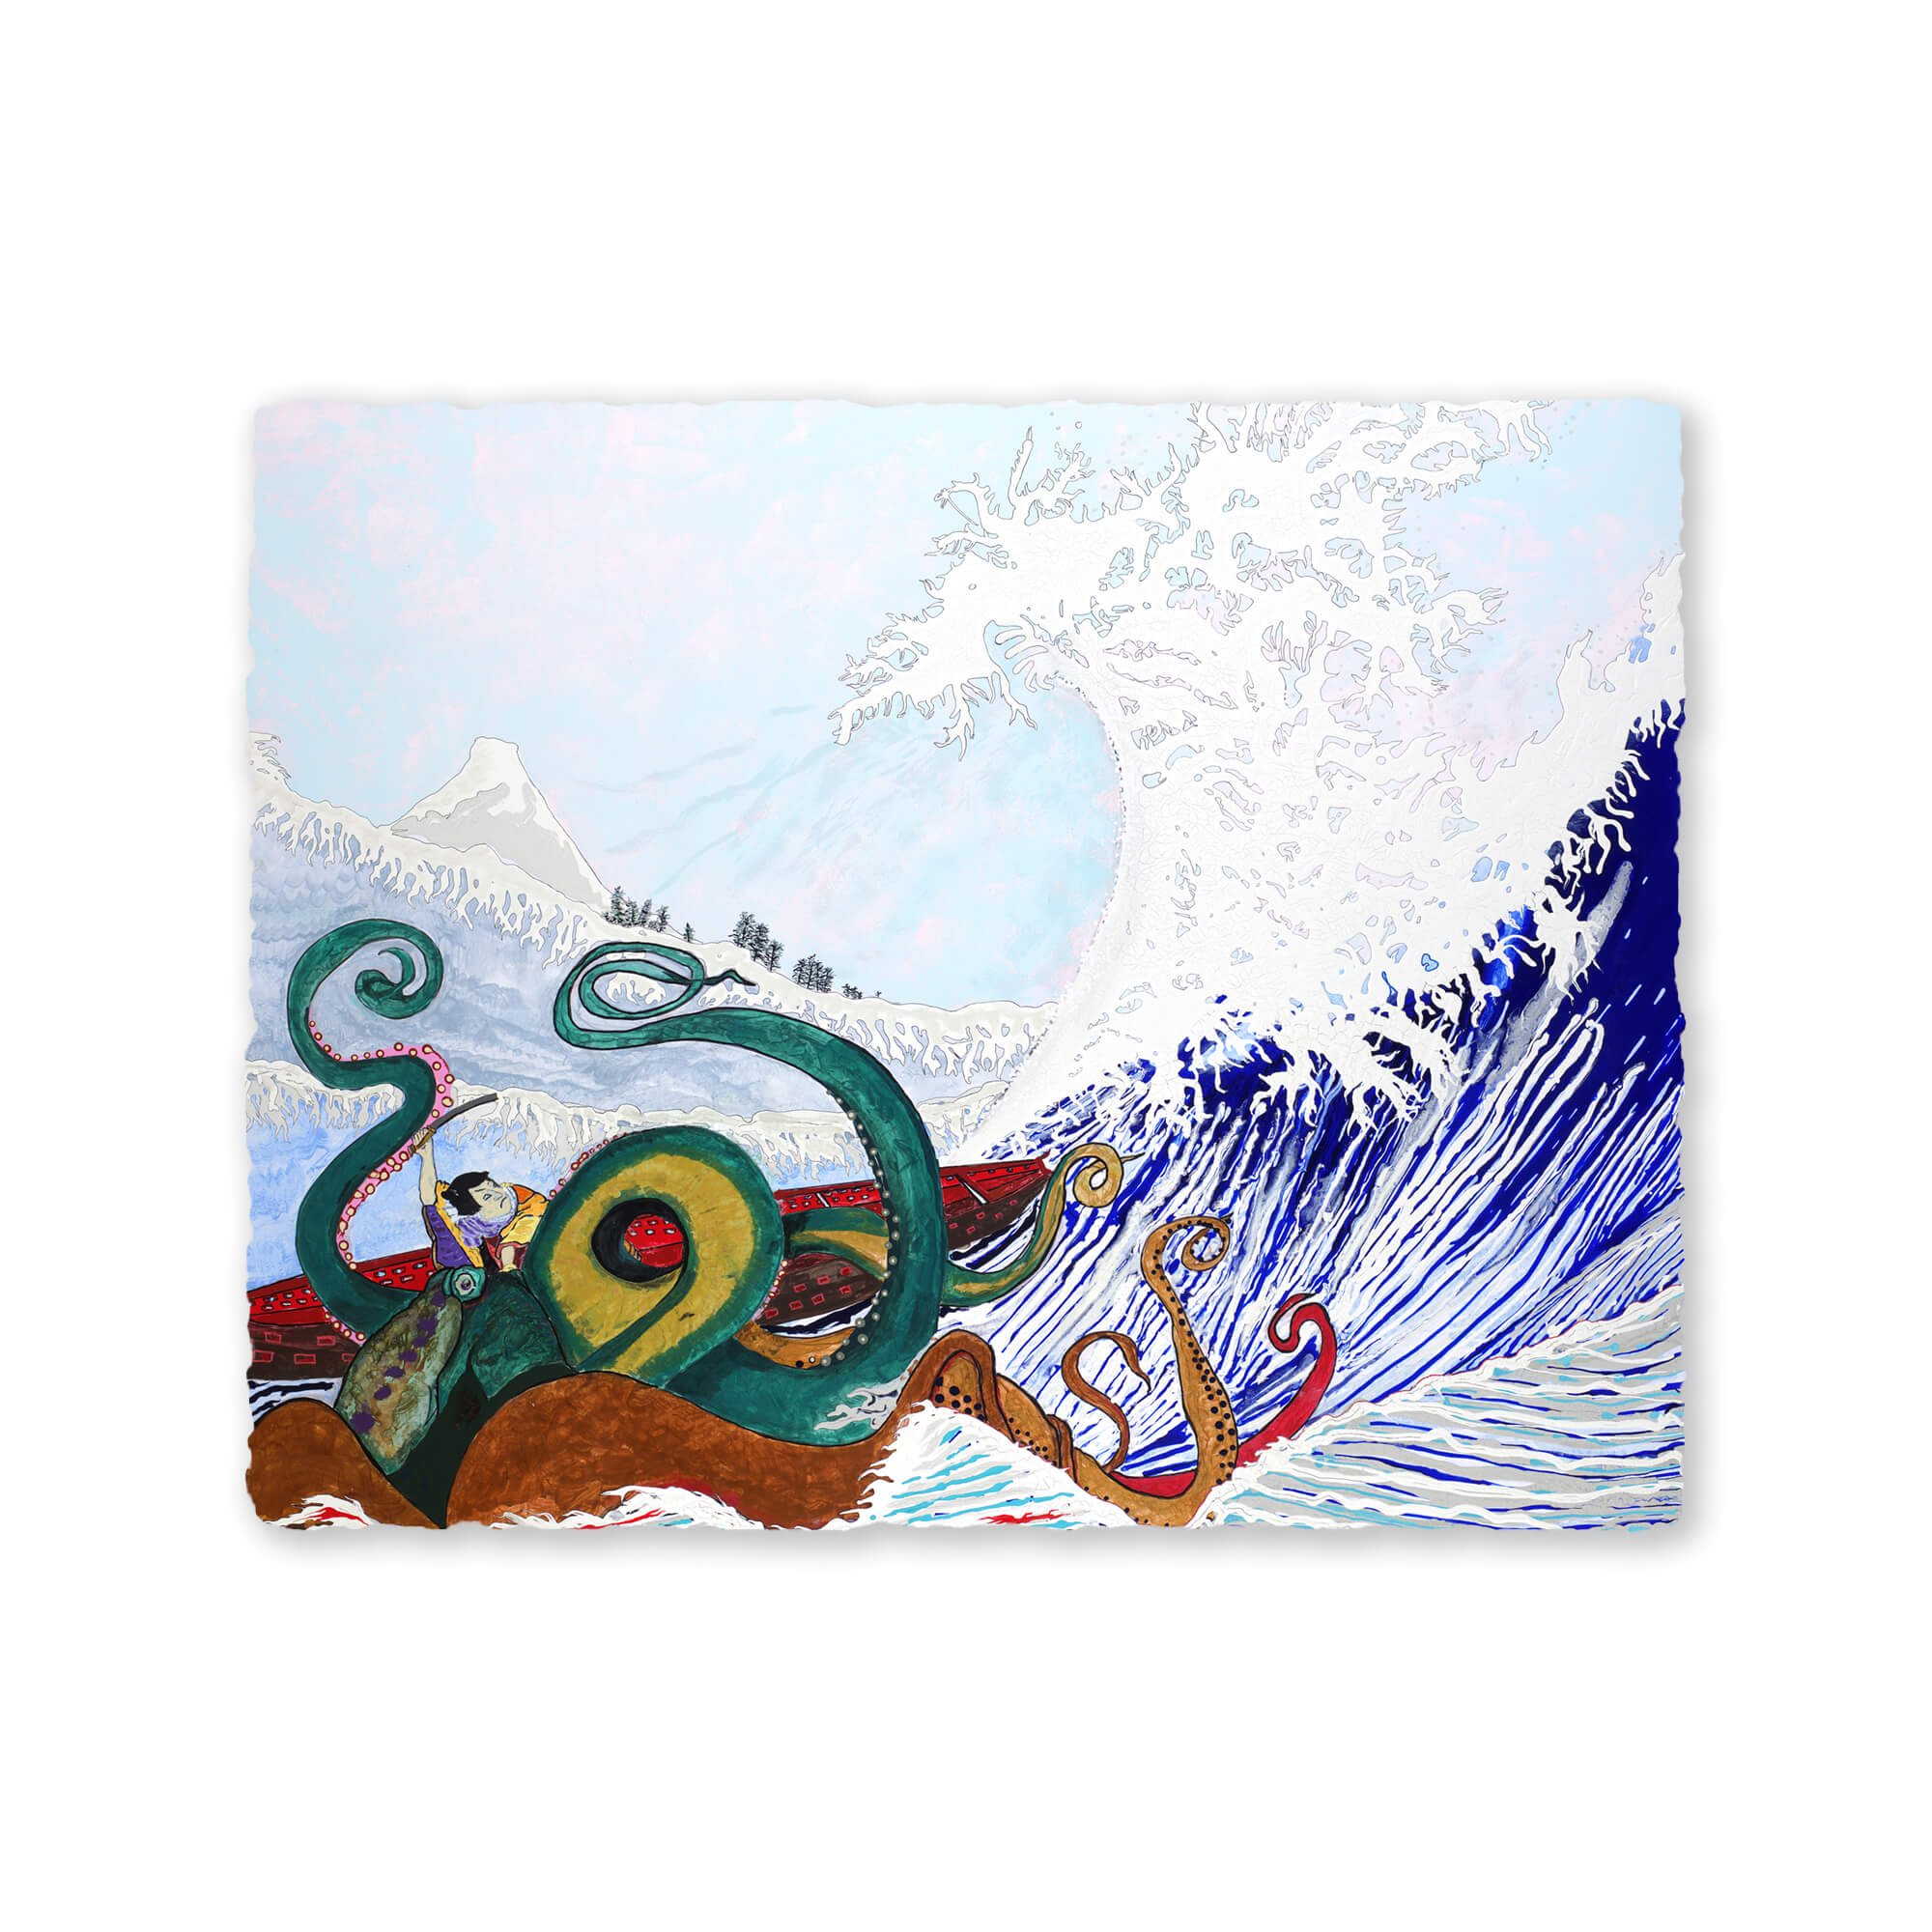 Paper art print featuring a green octopus by hawaii artist robert hazzard